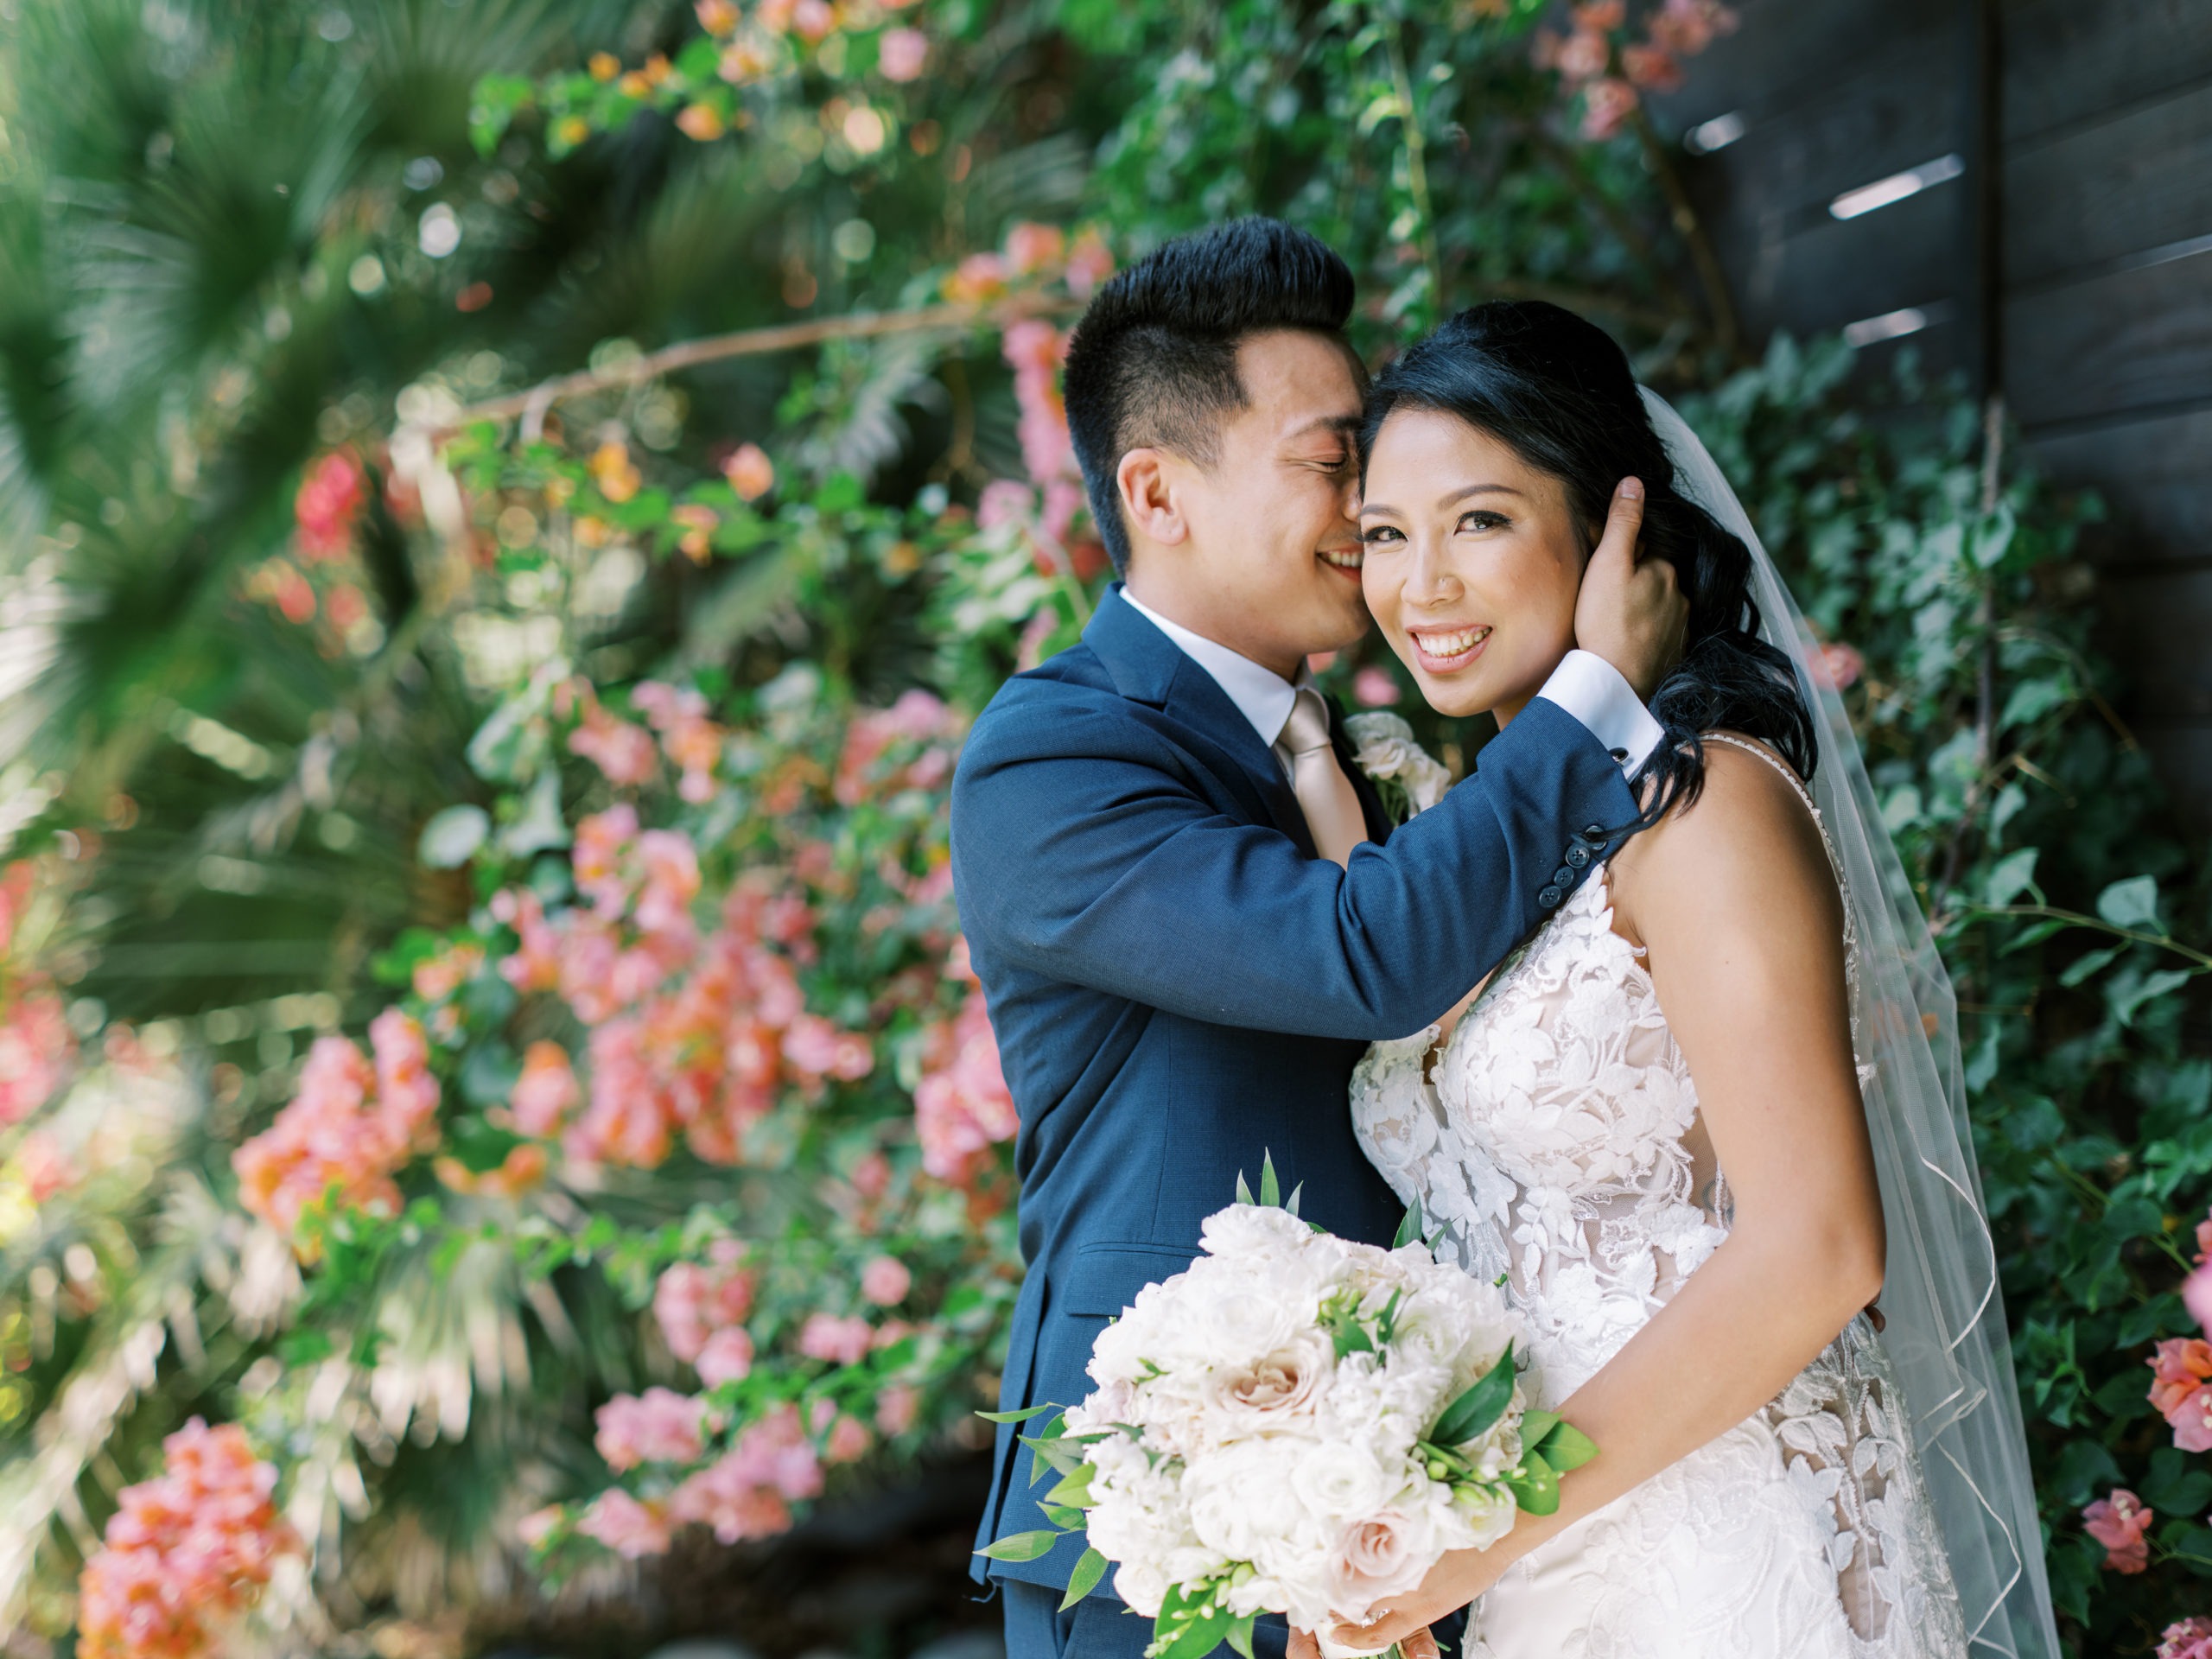 Top Rancho Palos Verdes Wedding Photographer - Bride and Groom